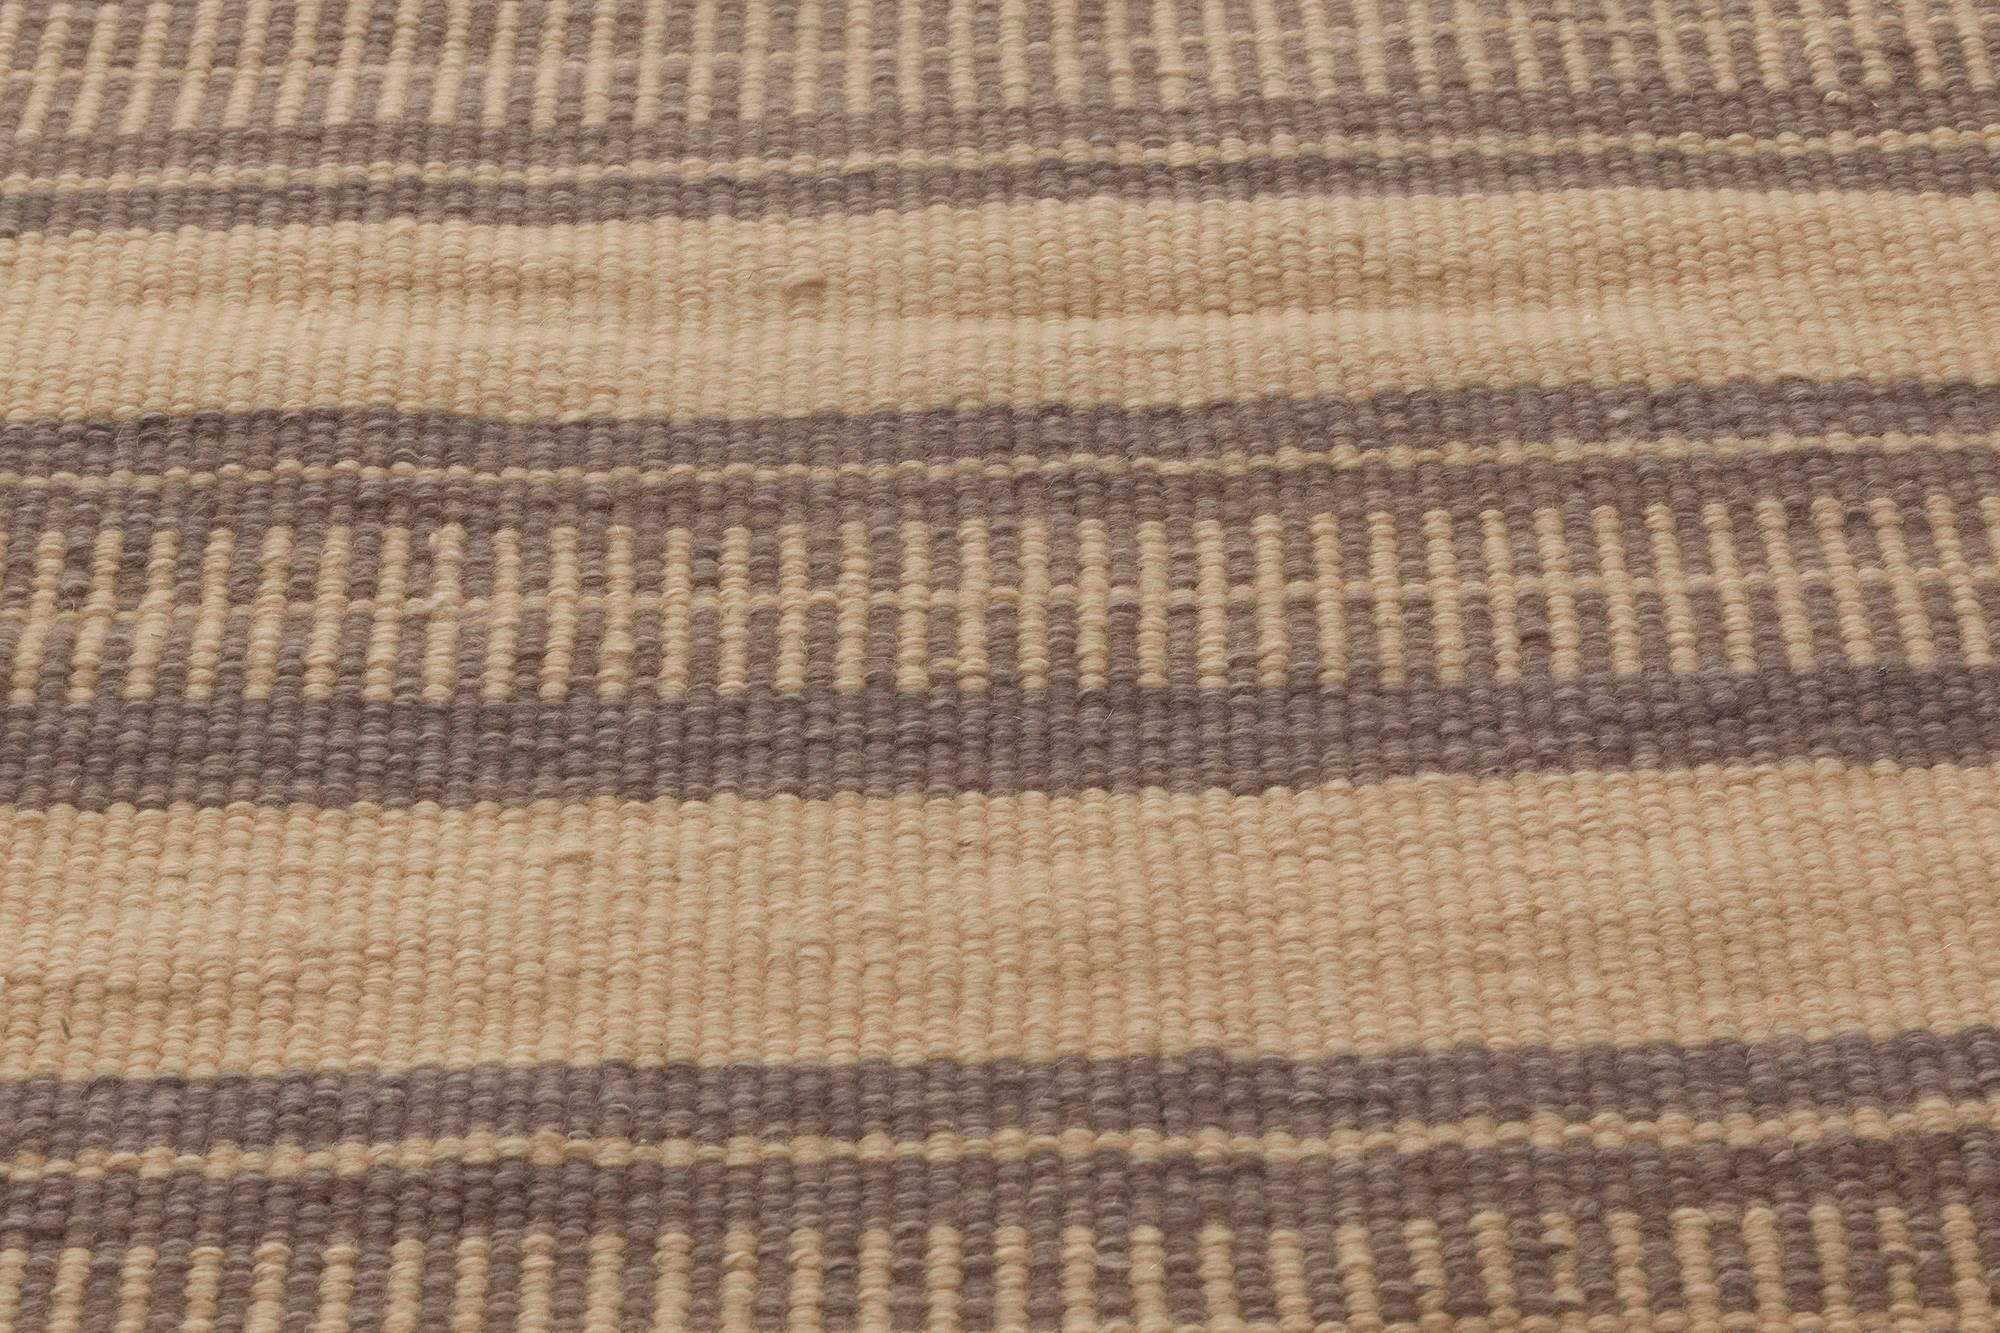 Indian Modern Striped Beige and Brown Handmade Wool Rug by Doris Leslie Blau For Sale